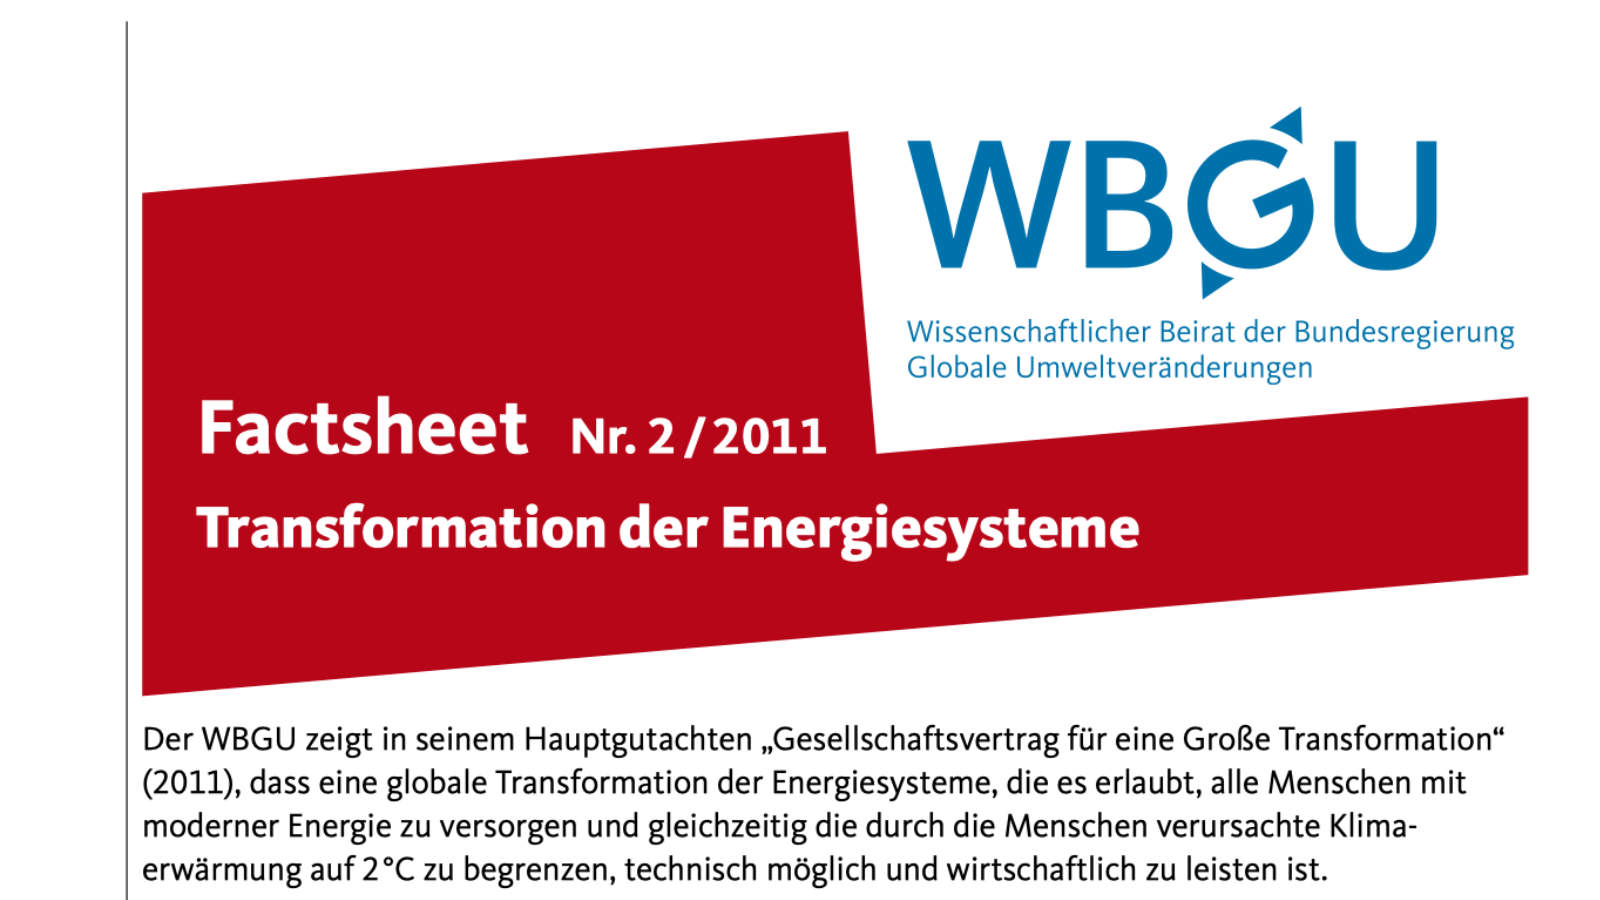 Factsheet: Transformation der Energiesysteme